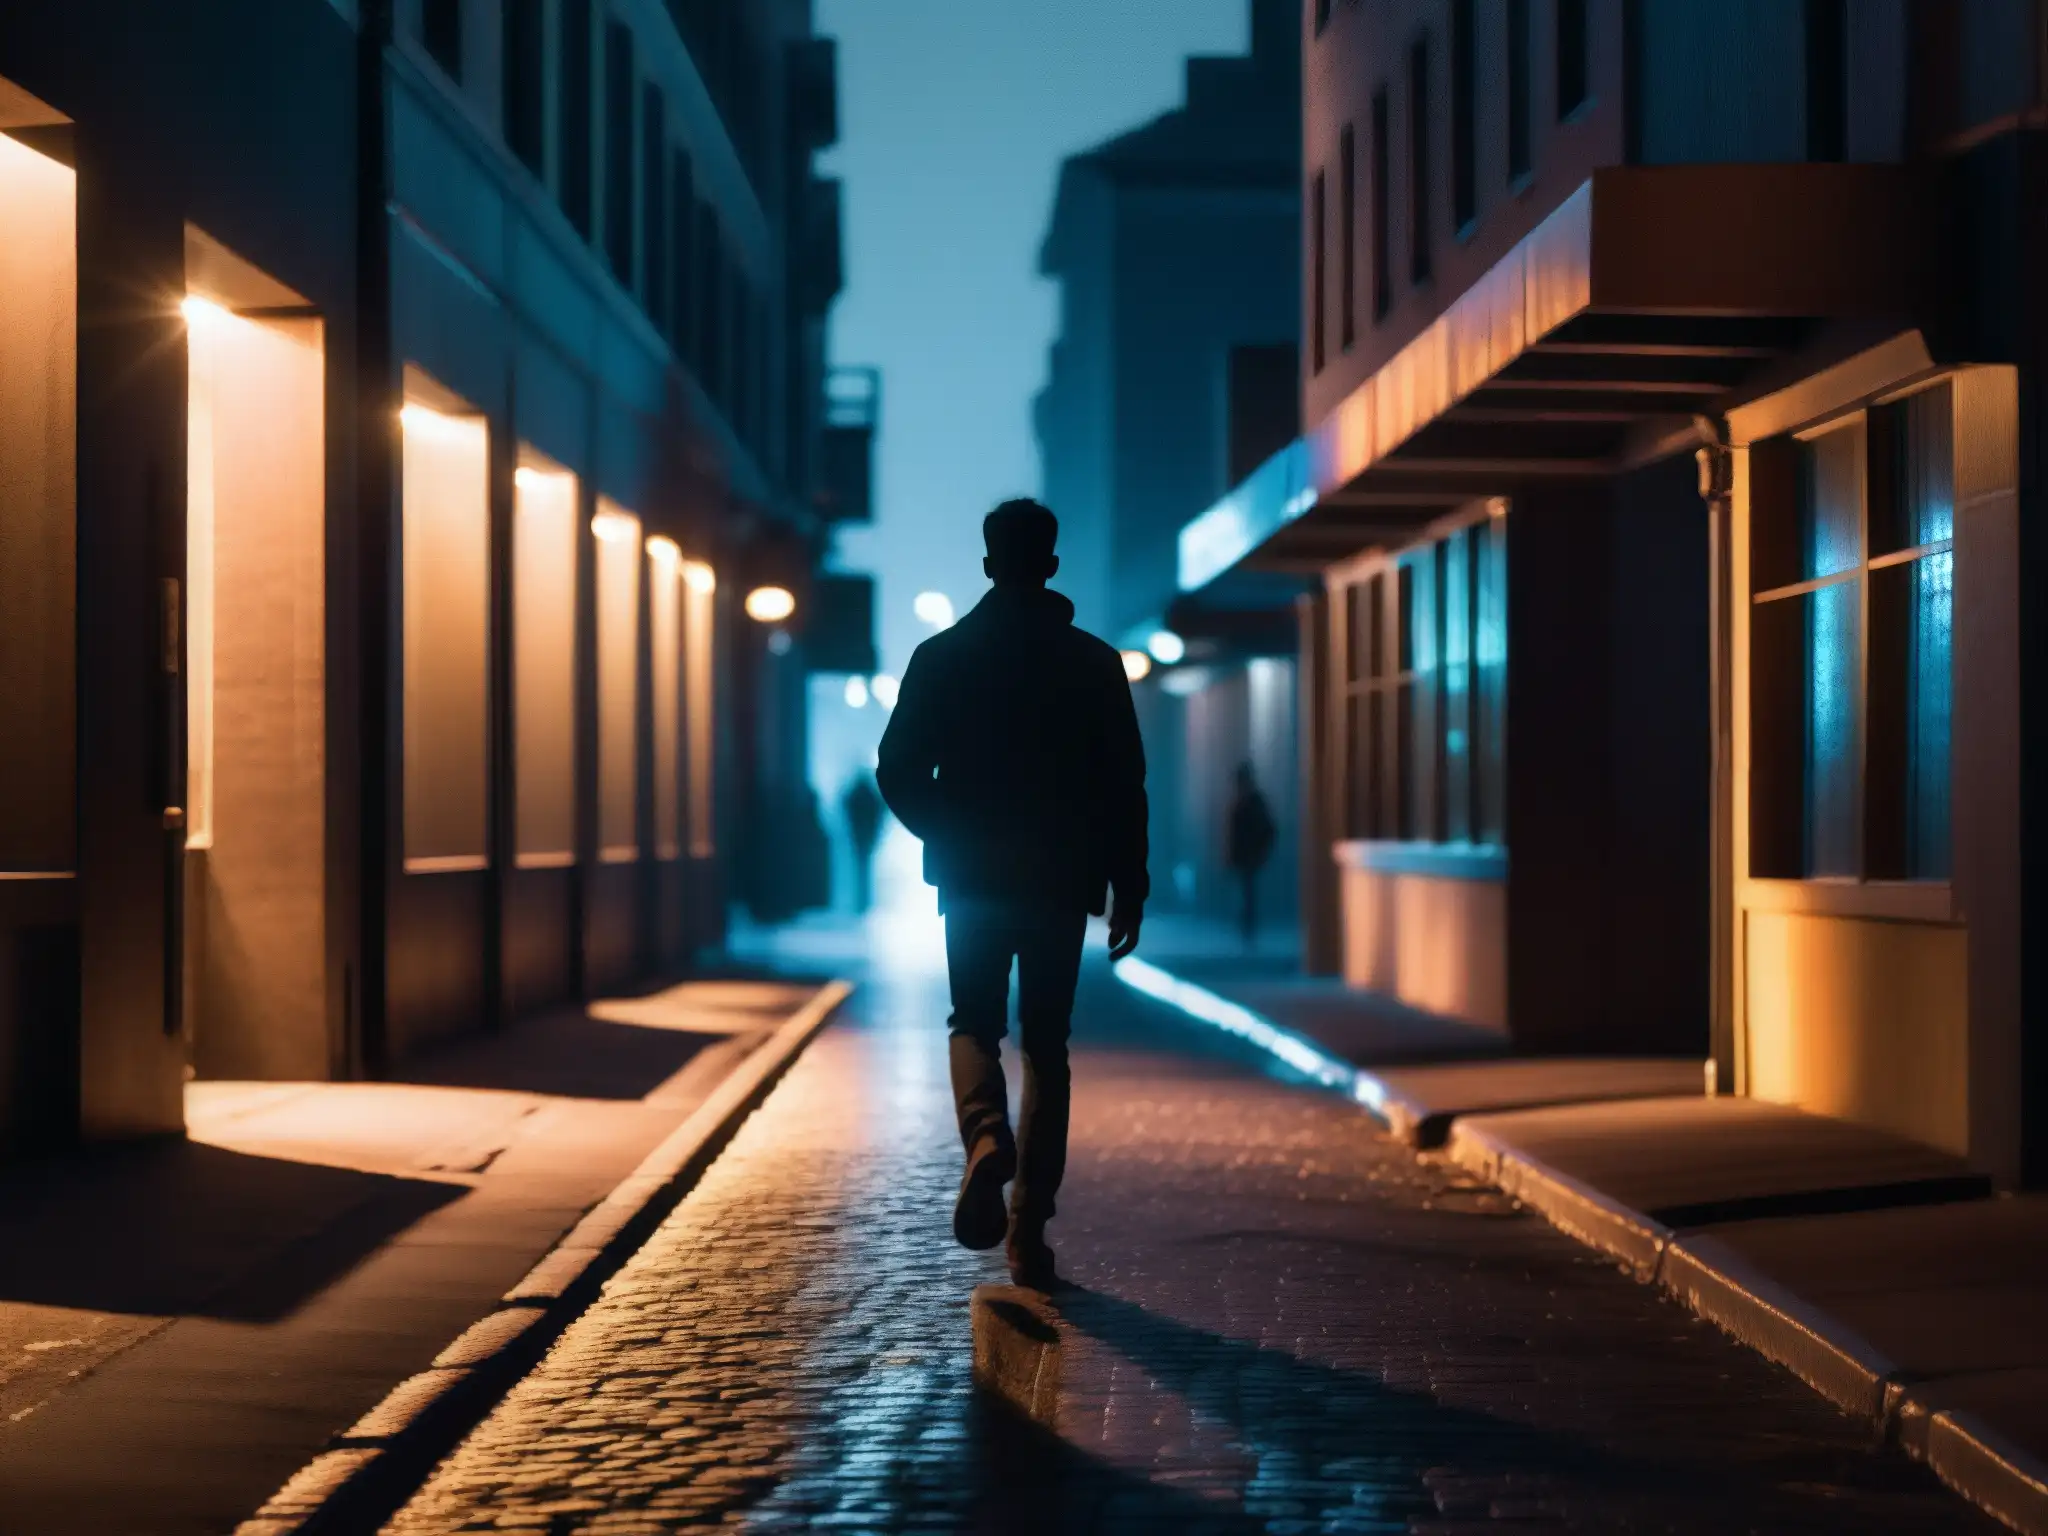 Un caminante solitario, iluminado por la pantalla del smartphone, en una calle oscura, evocando leyendas urbanas dispositivos inteligentes